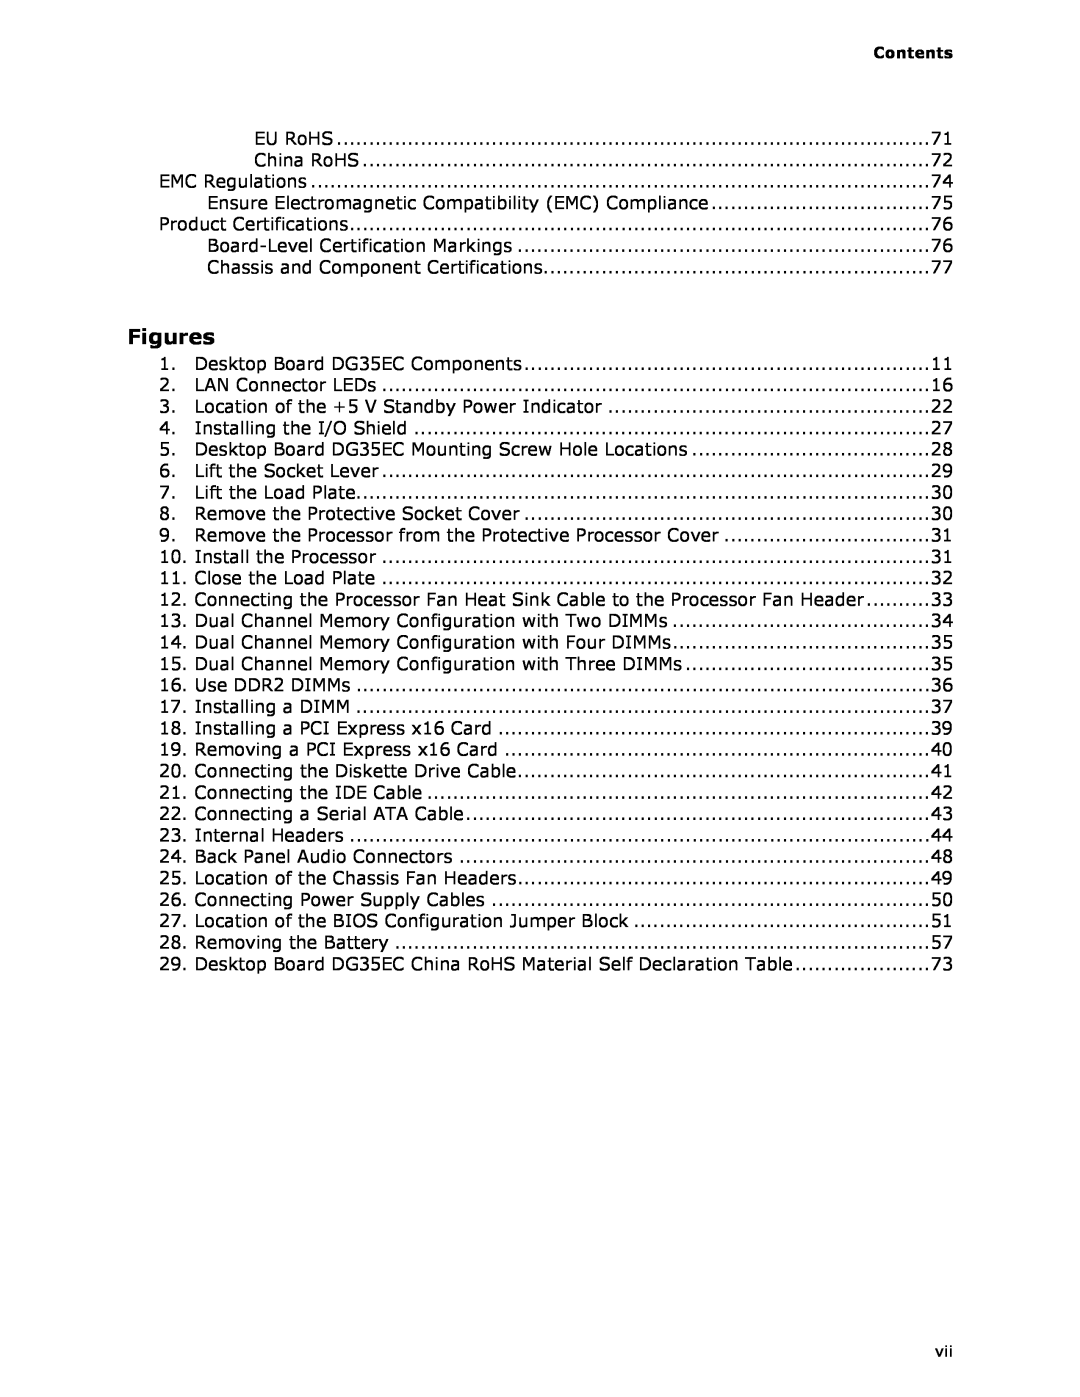 Intel DG35EC, Intel Desktop Board manual Figures, Contents 